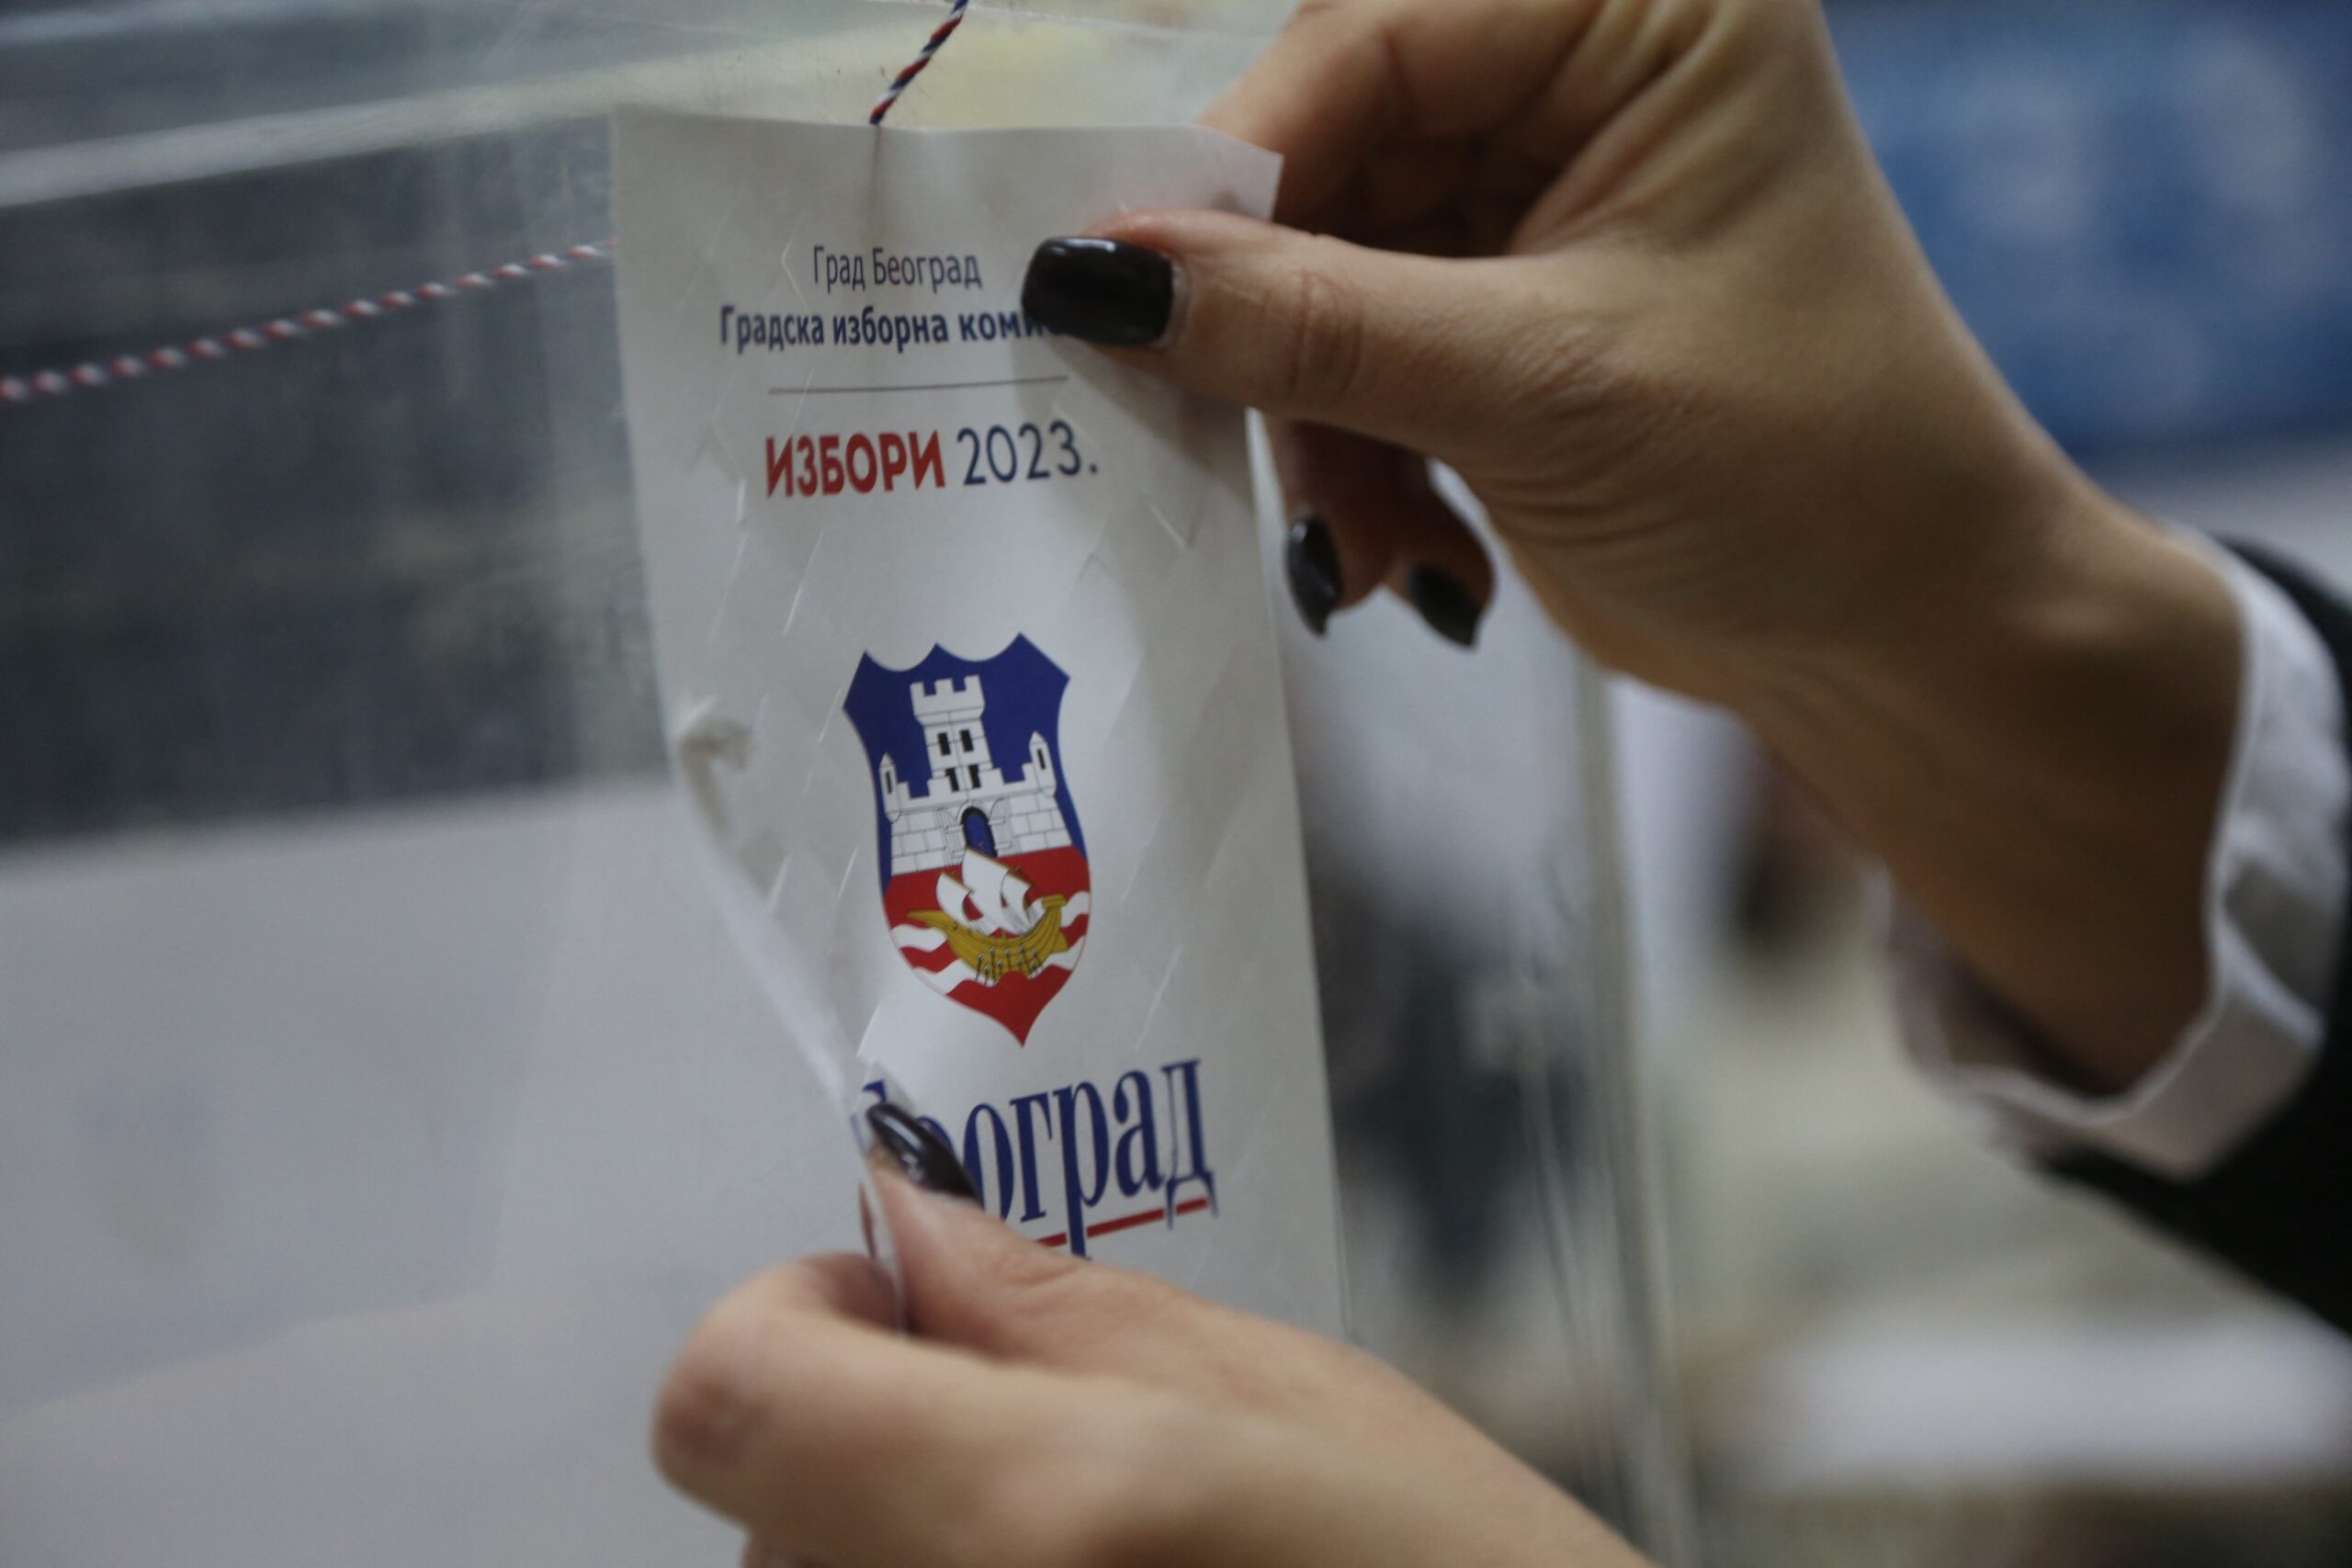 Pokret “1 od 5 miliona” i Beogradski front izlaze na izbore u Beogradu